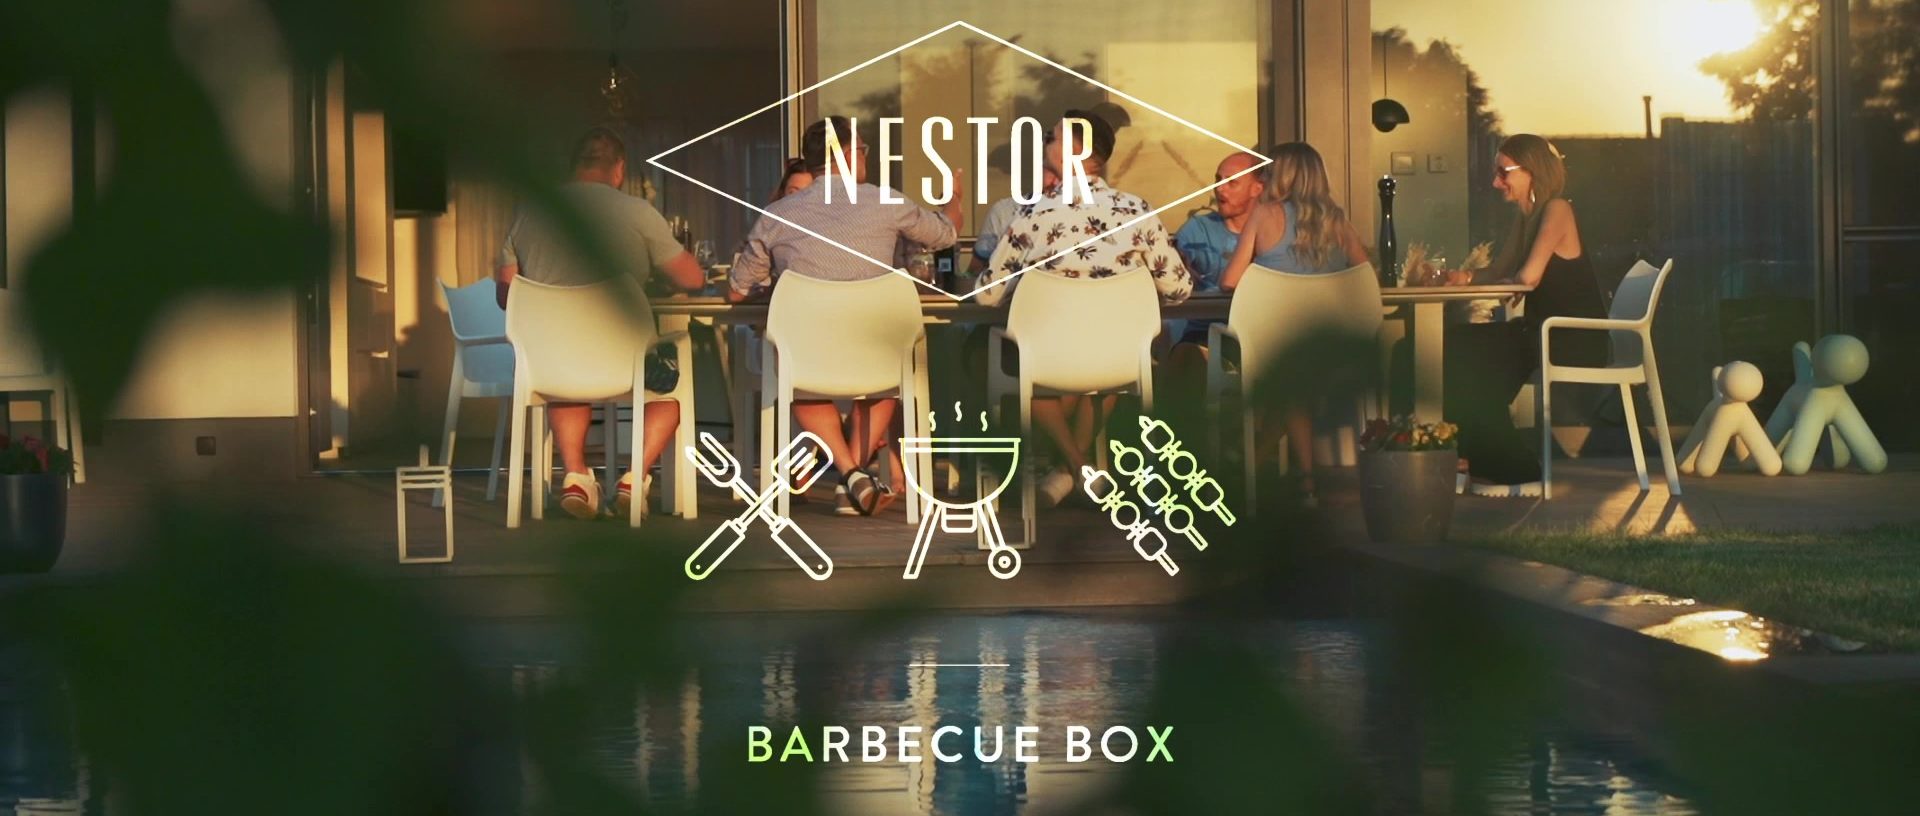 BBQ Box by Nestor